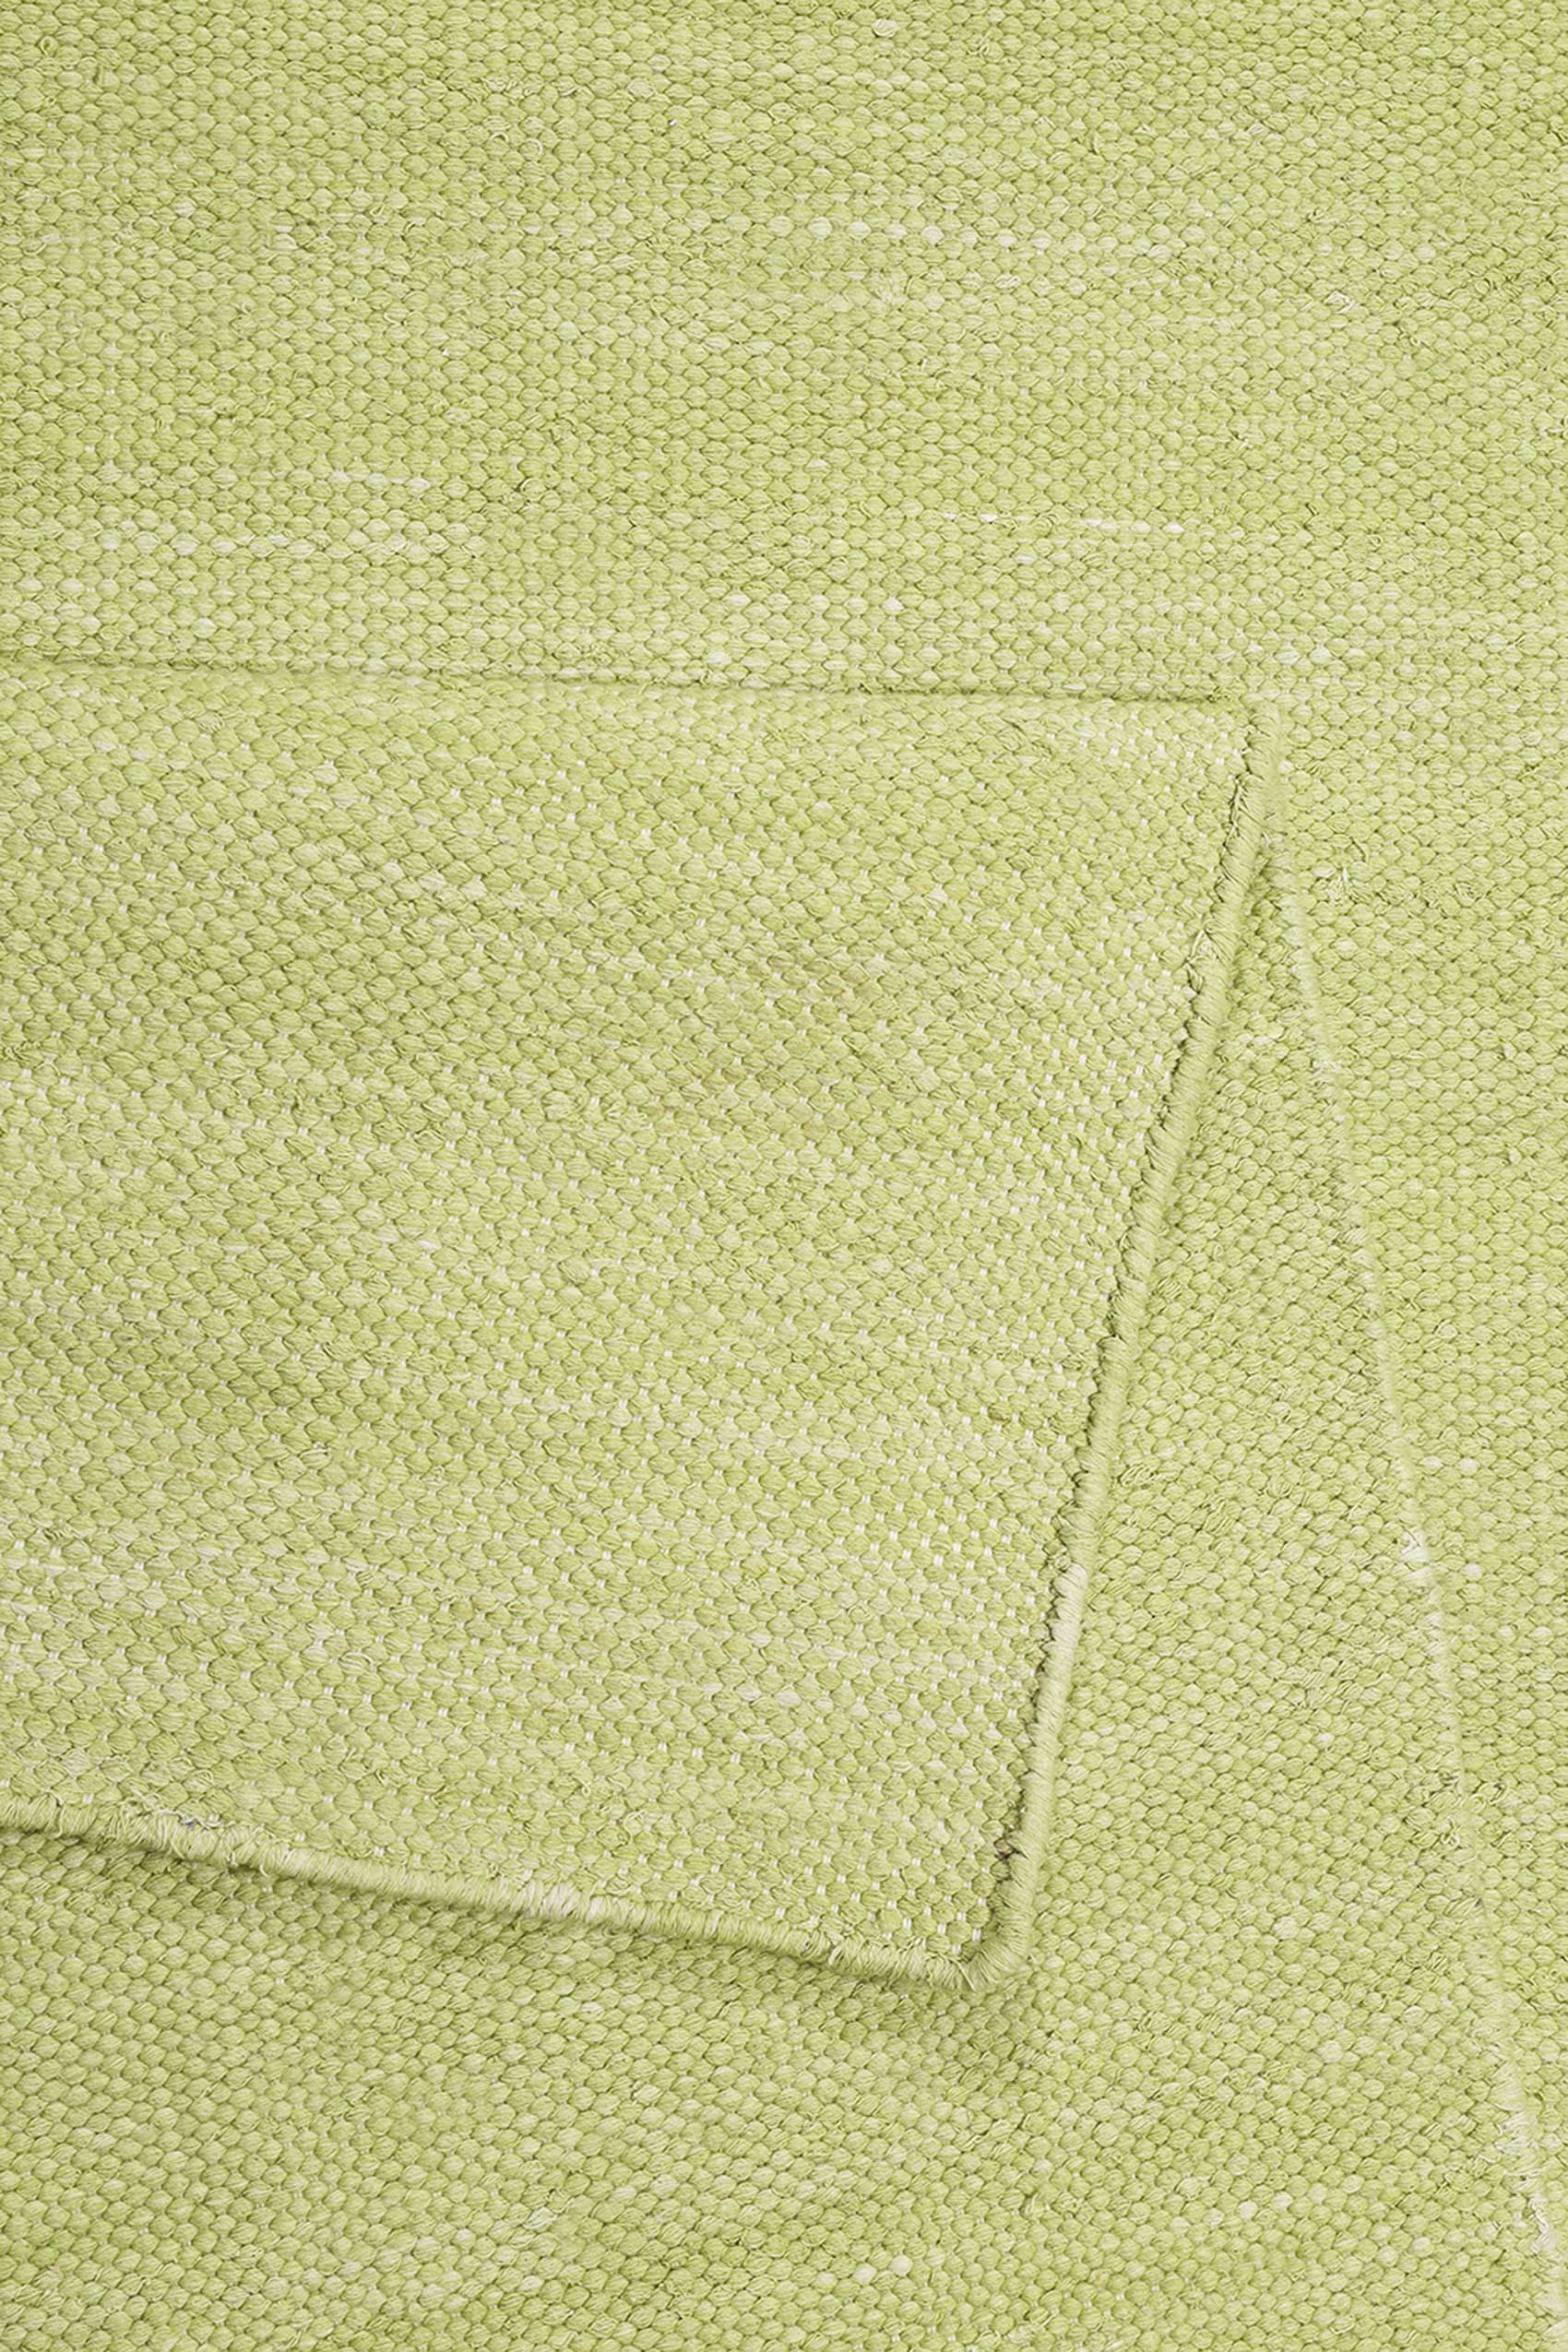 Esprit Kurzflor Teppich Grün aus Baumwolle » Rainbow Kelim « - Ansicht 3